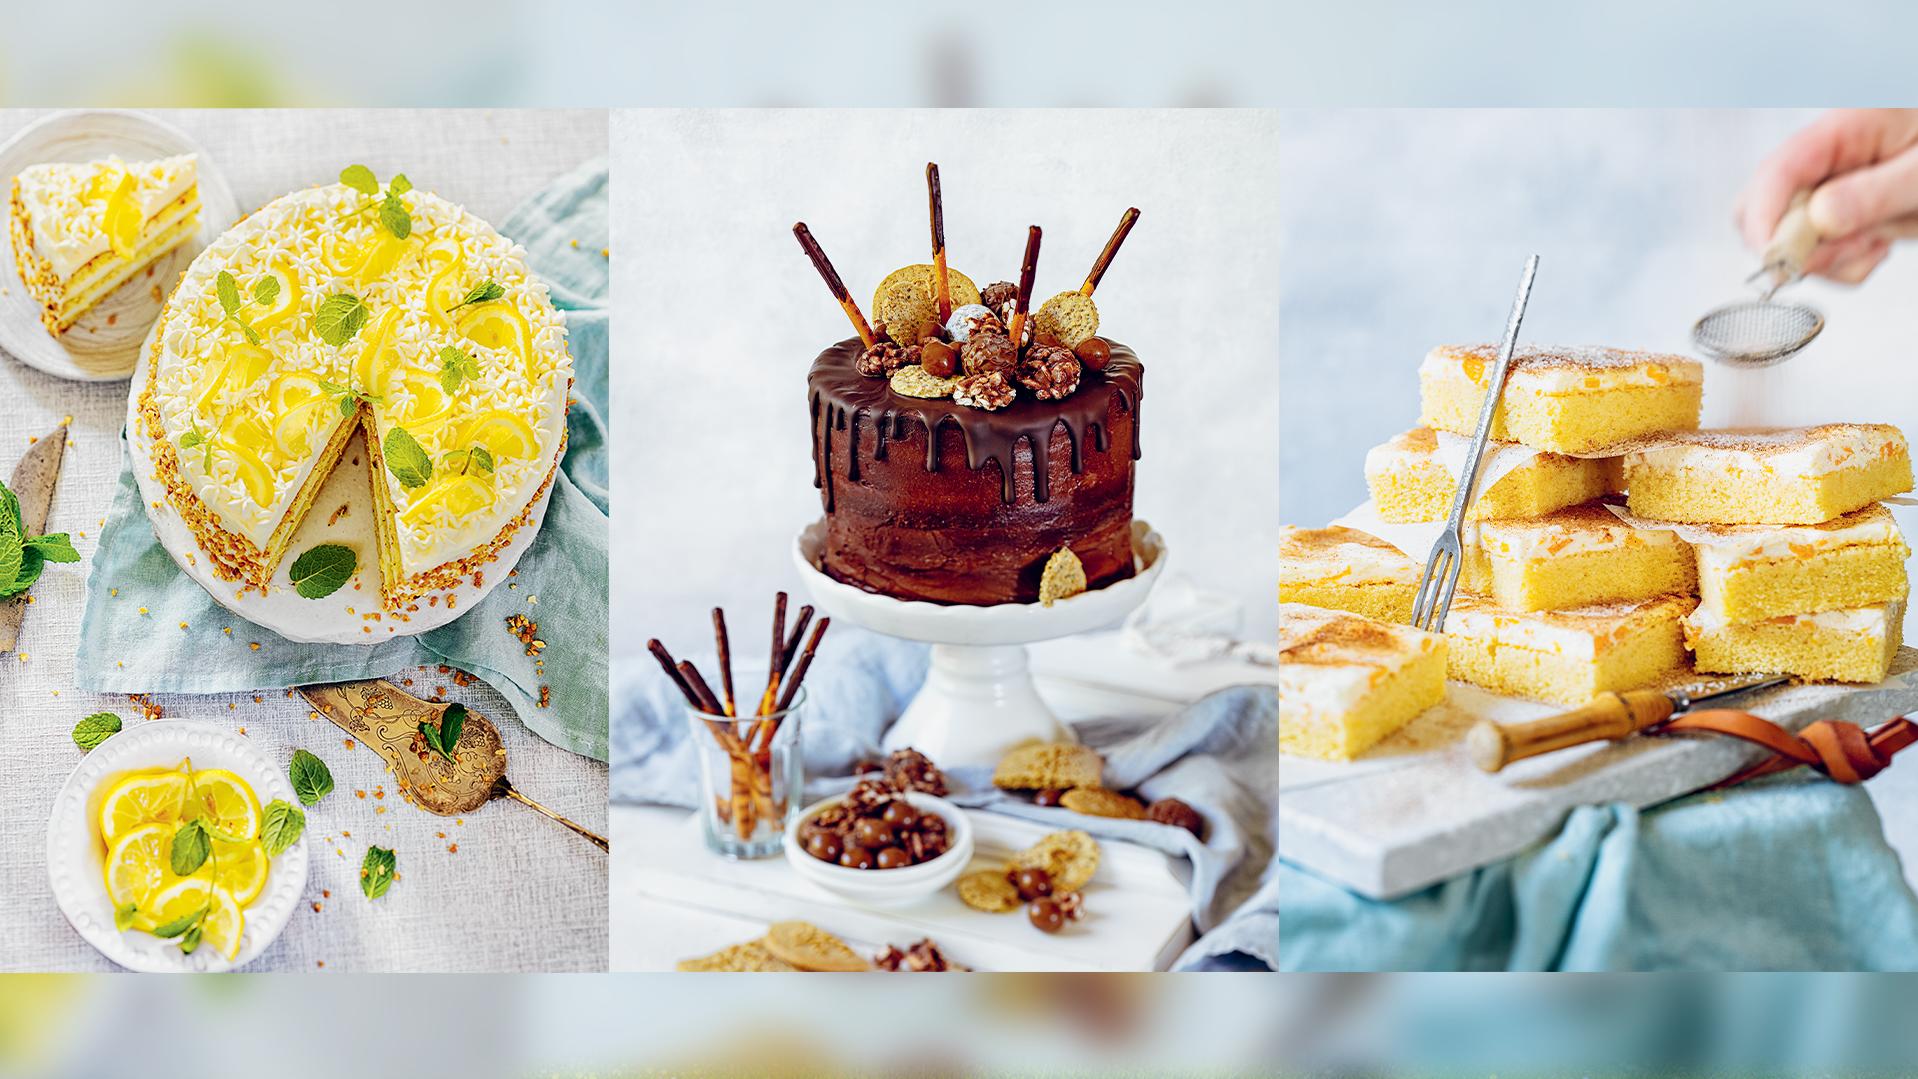 Bloggerin Tanja Gruber hat ein Backbuch für glutenfreie Torten und Kuchen geschrieben